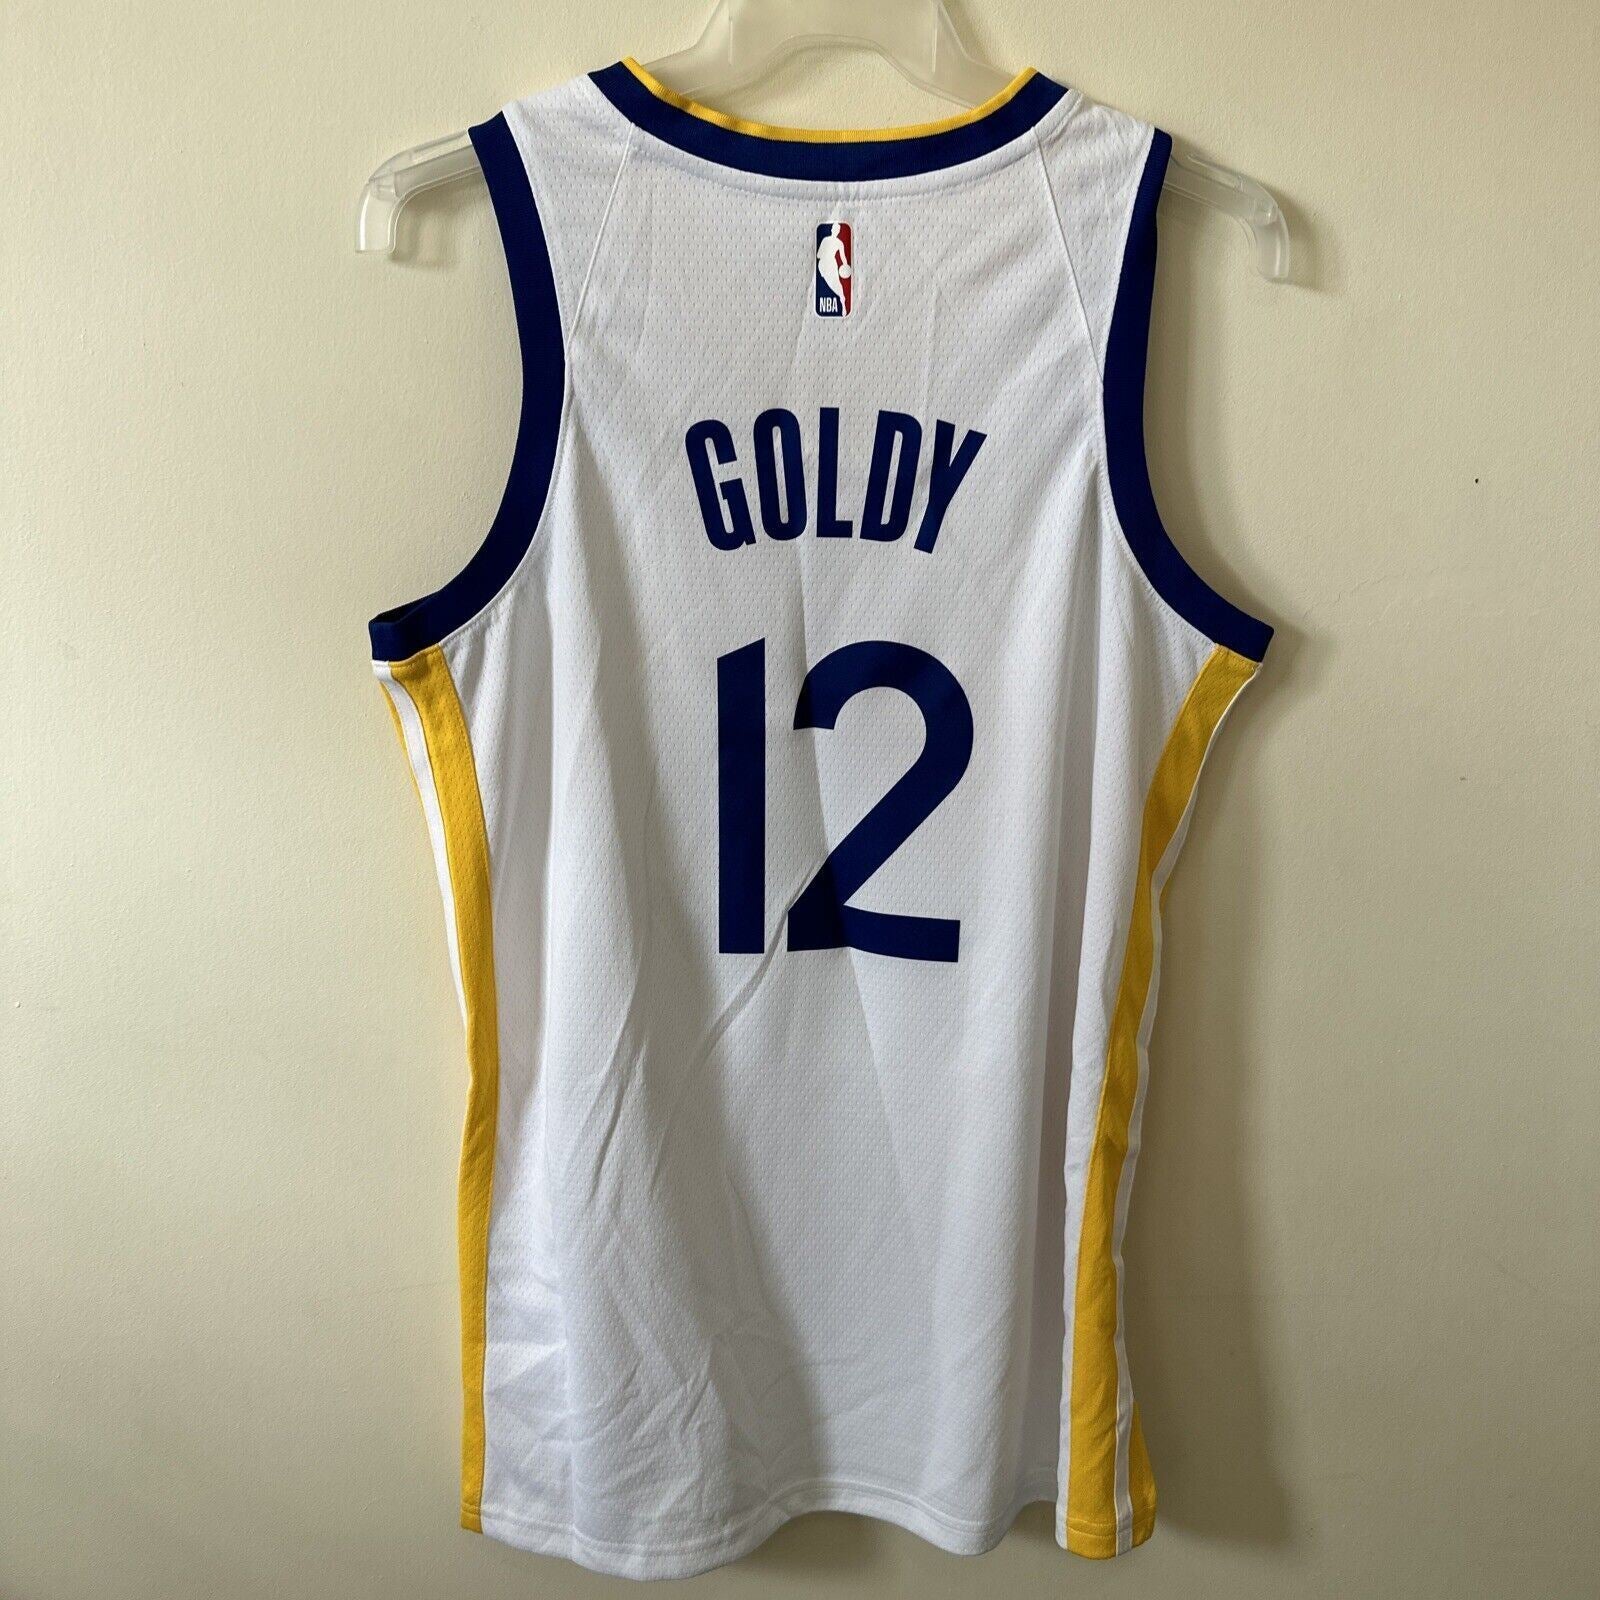 Nike NBA Golden State Warriors Association Edition Jersey GOLDY 12 Men’s Medium